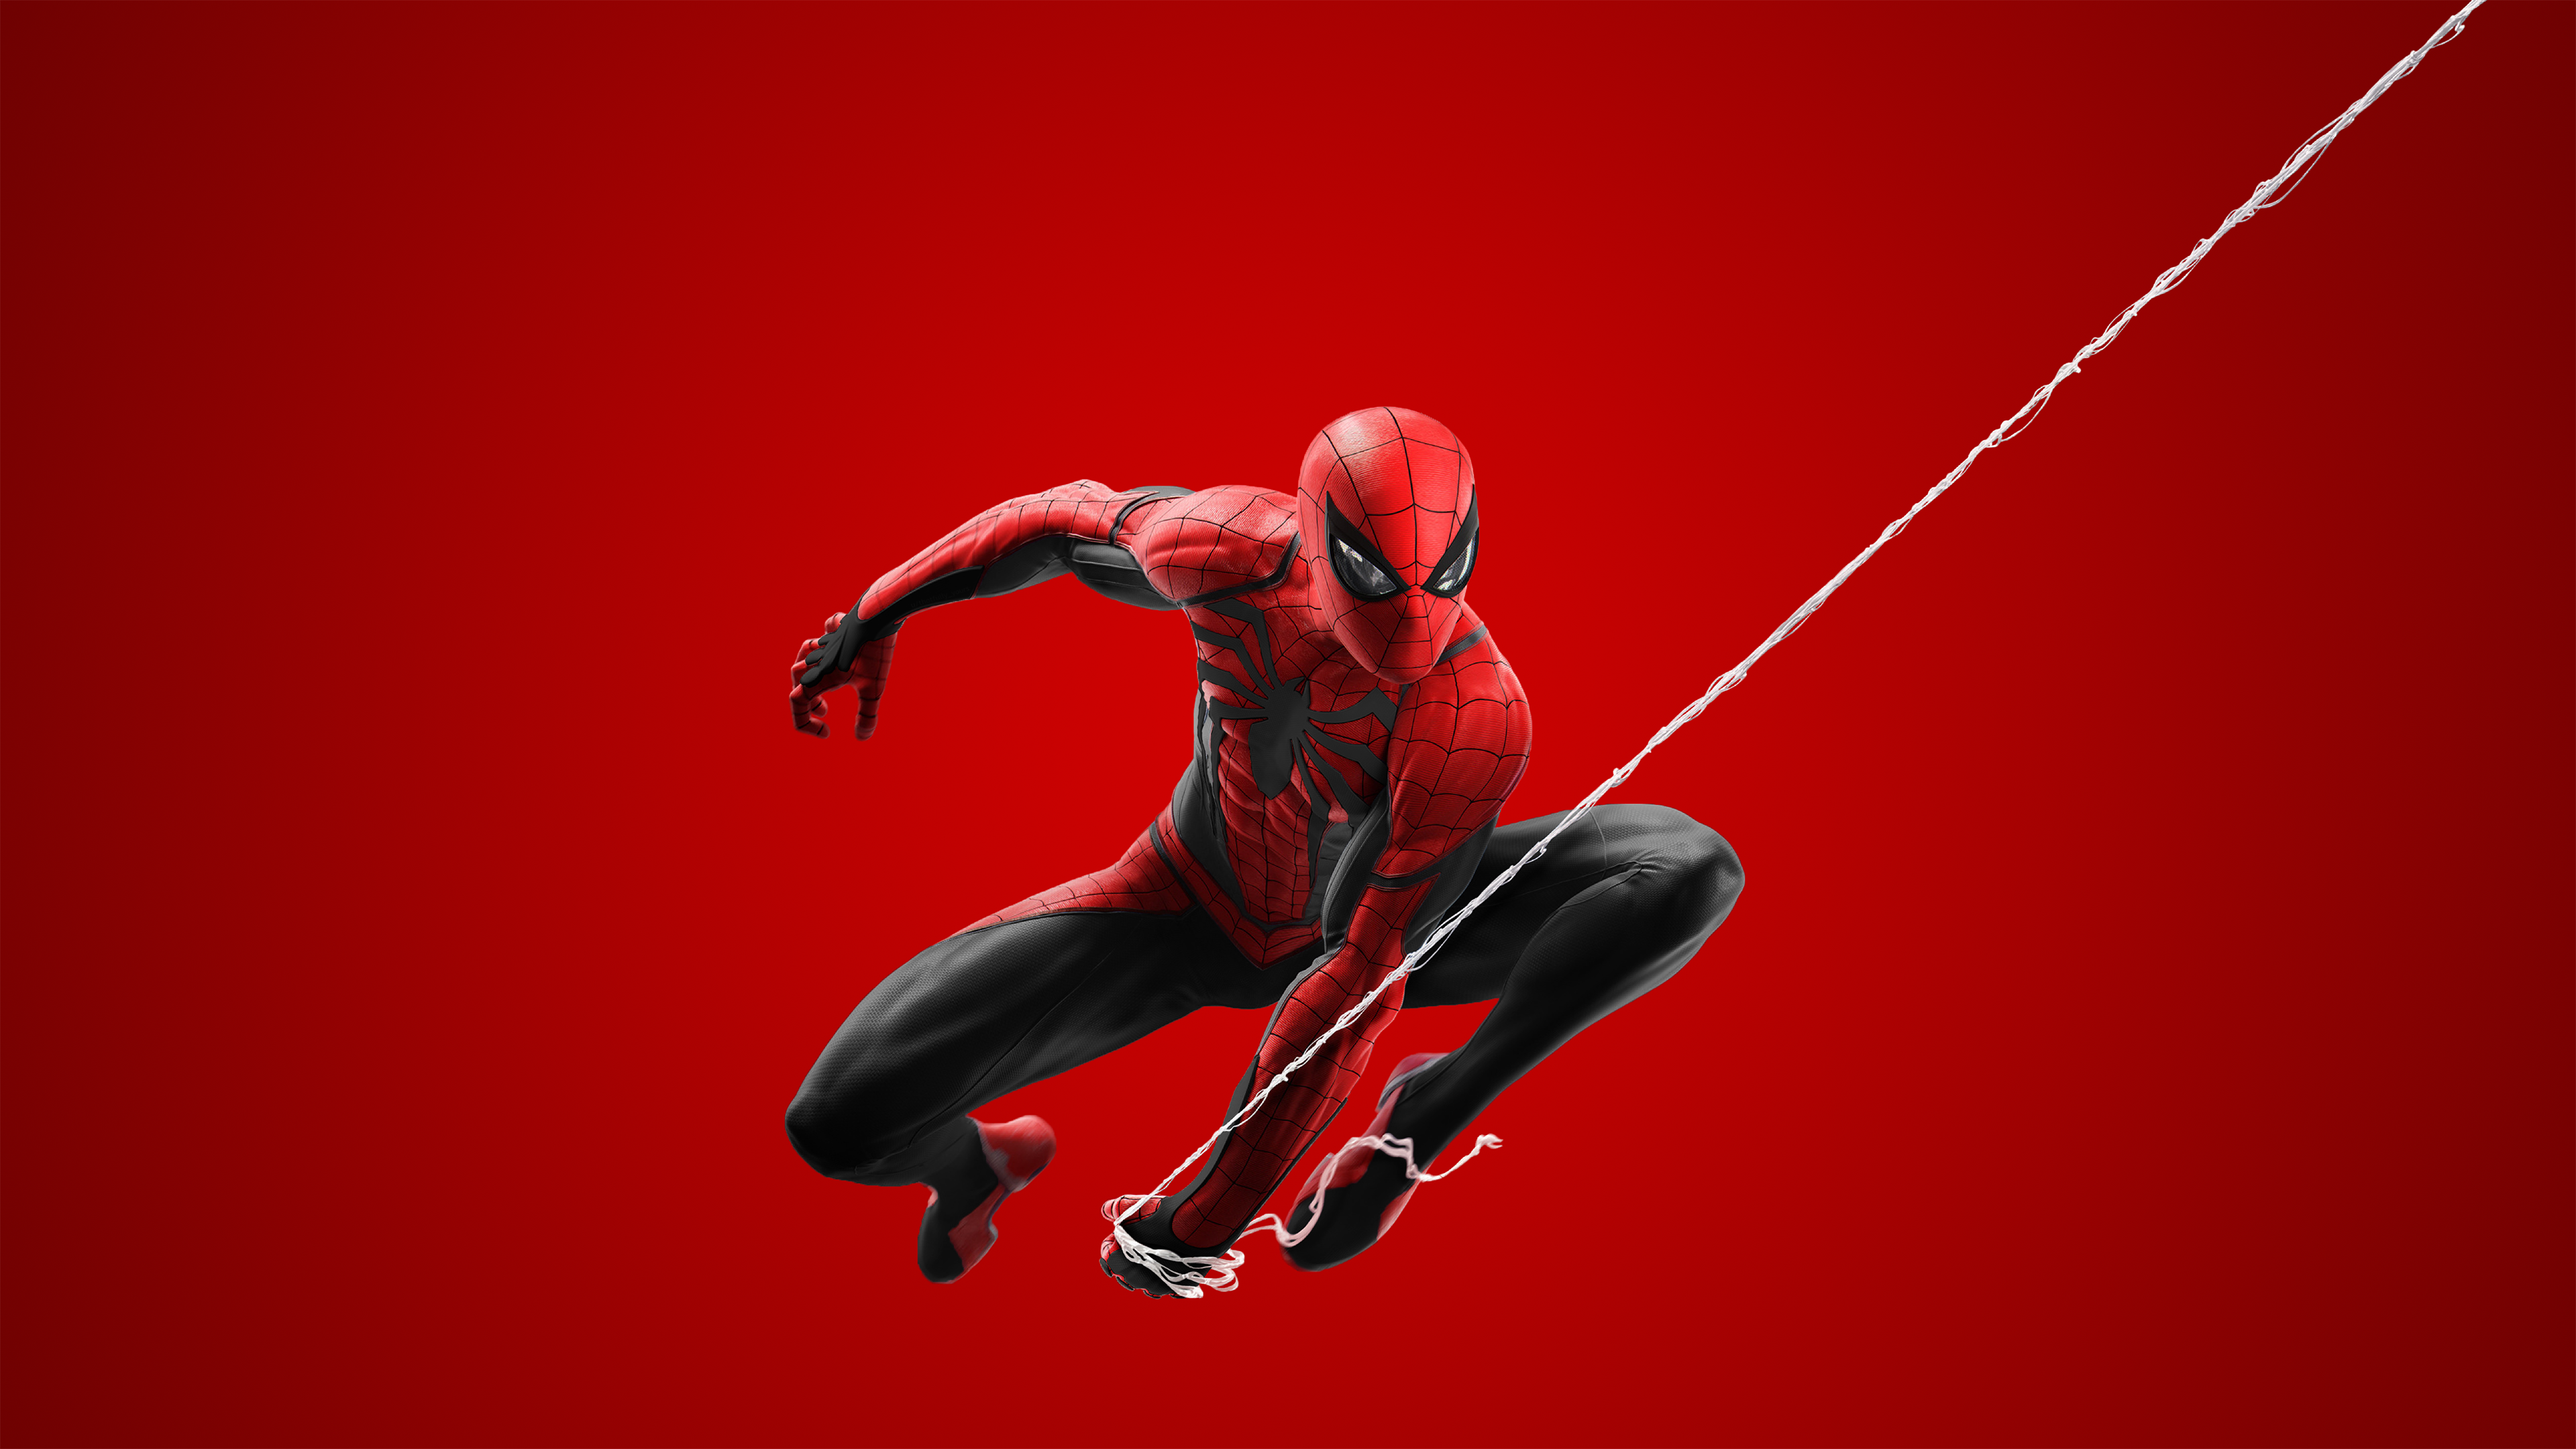 Spider man ps5 download - asebanking